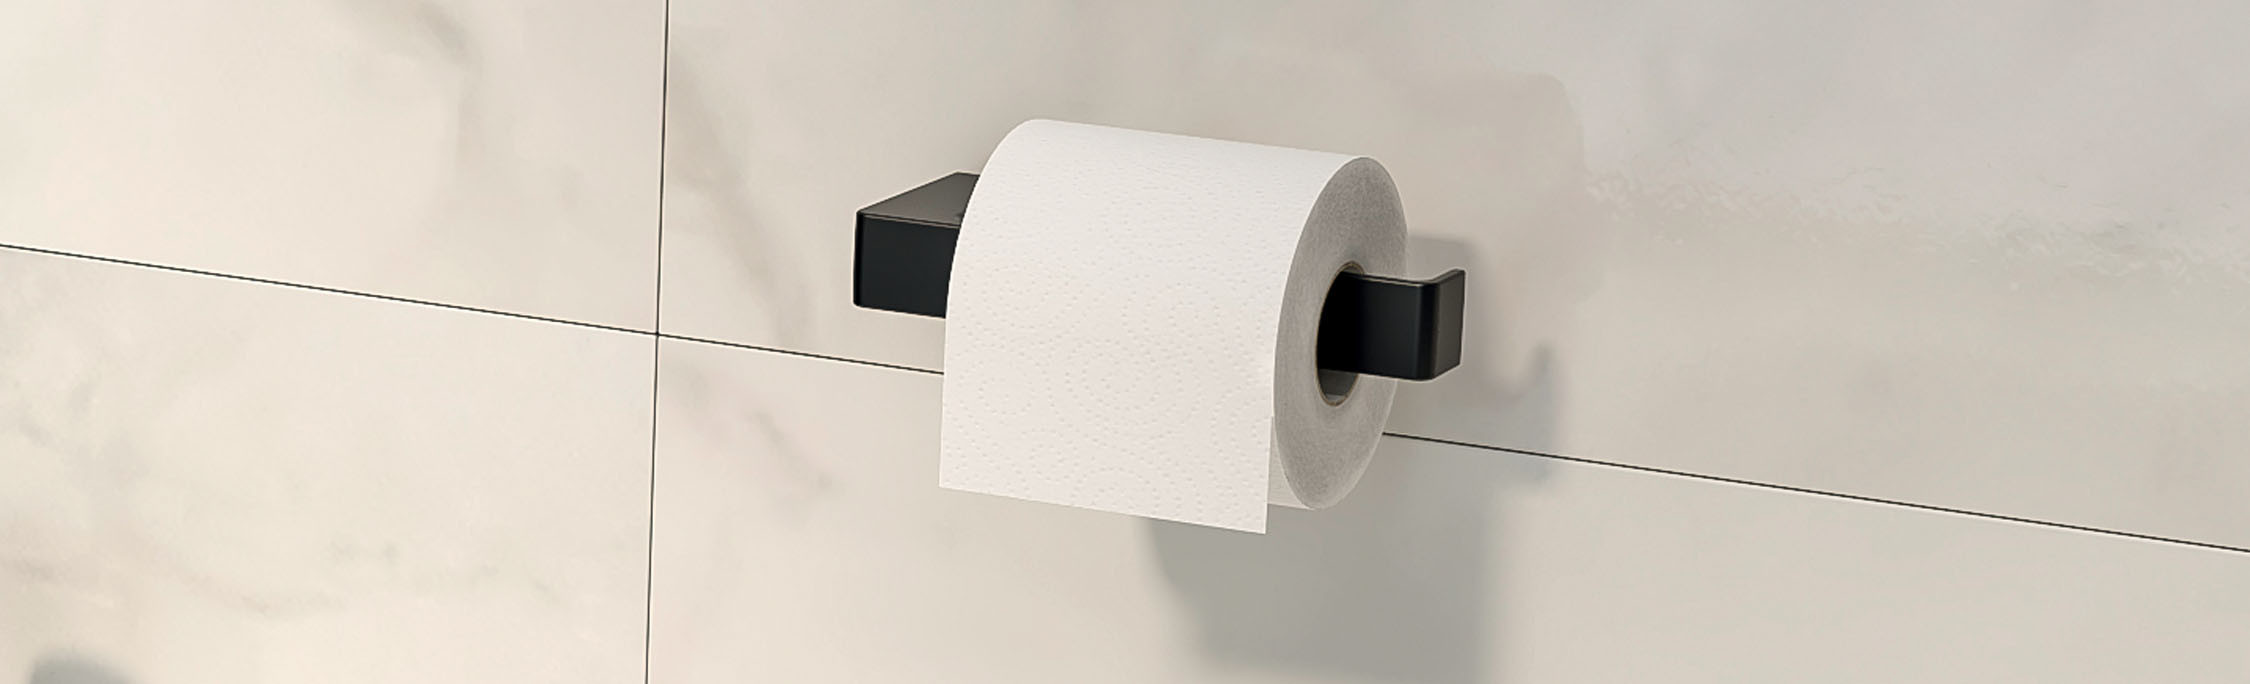 Porte-papiers toilette